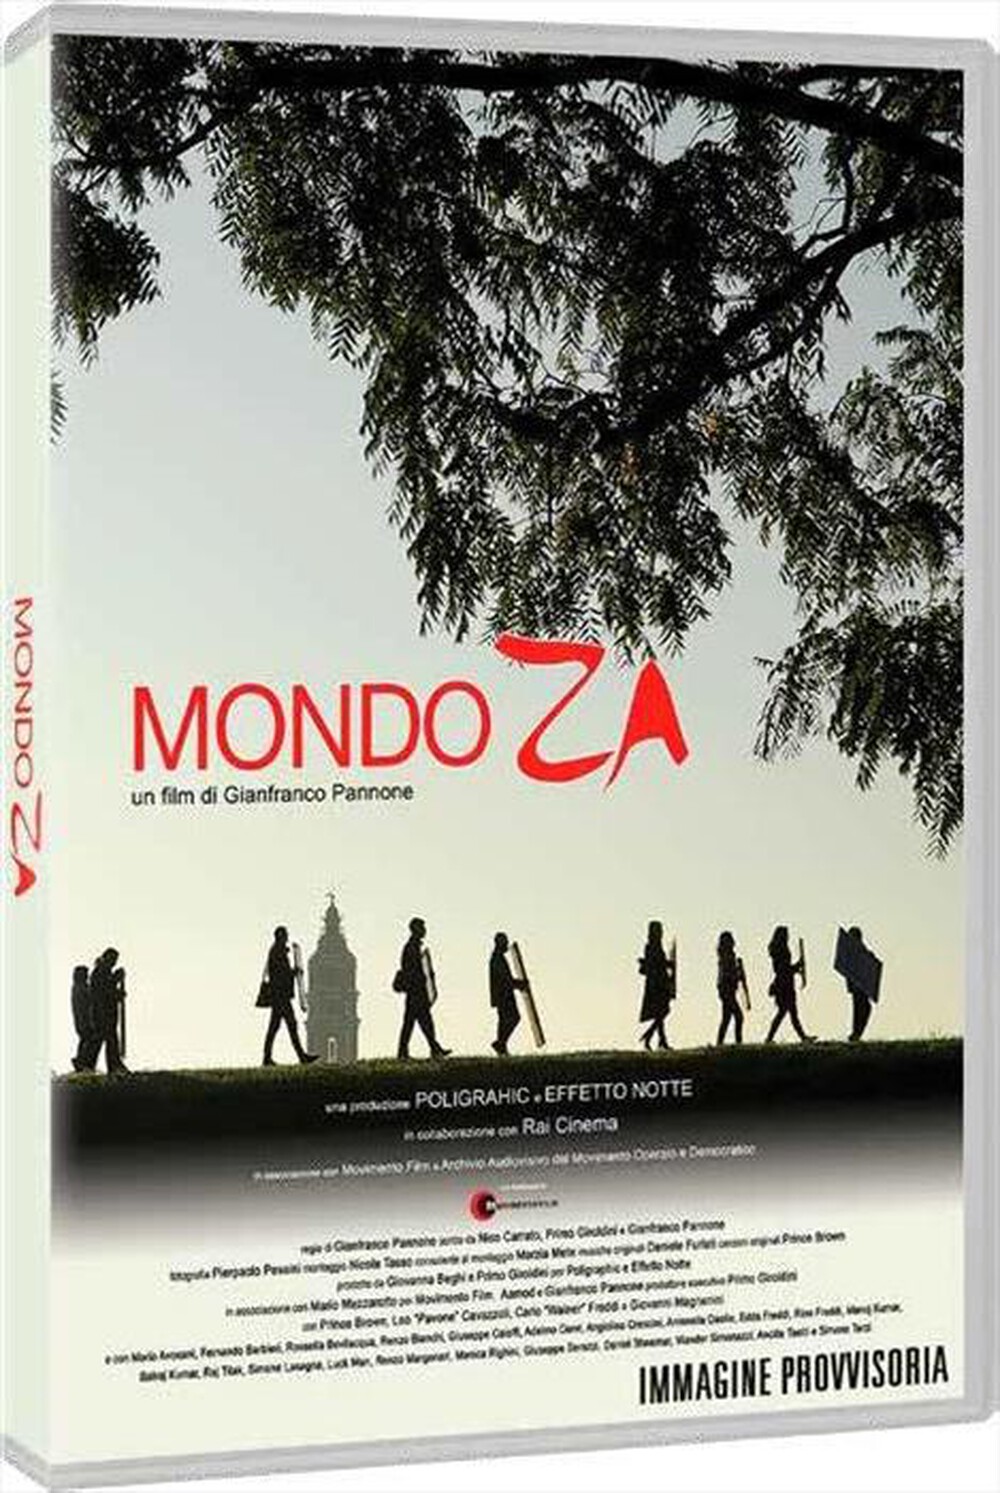 "MOVIMENTO FILM - Mondo Za"